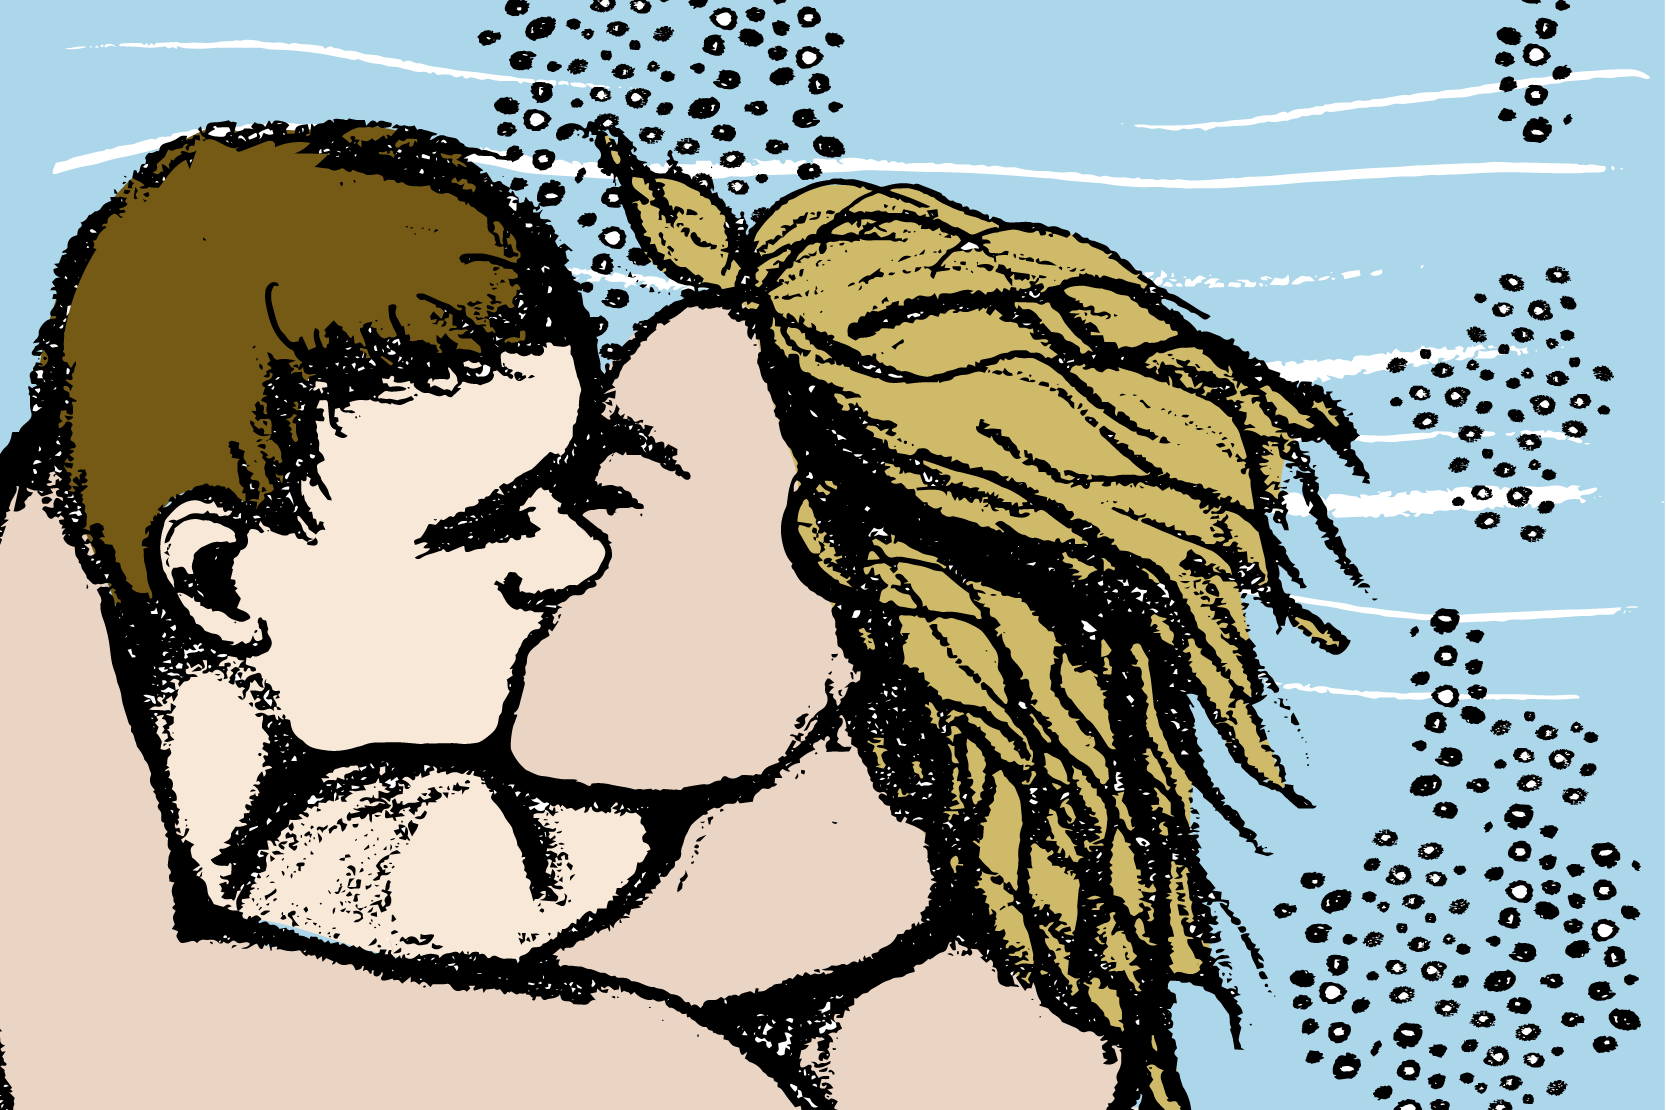 Två personer kysser varandra under vattnet. Illustration.